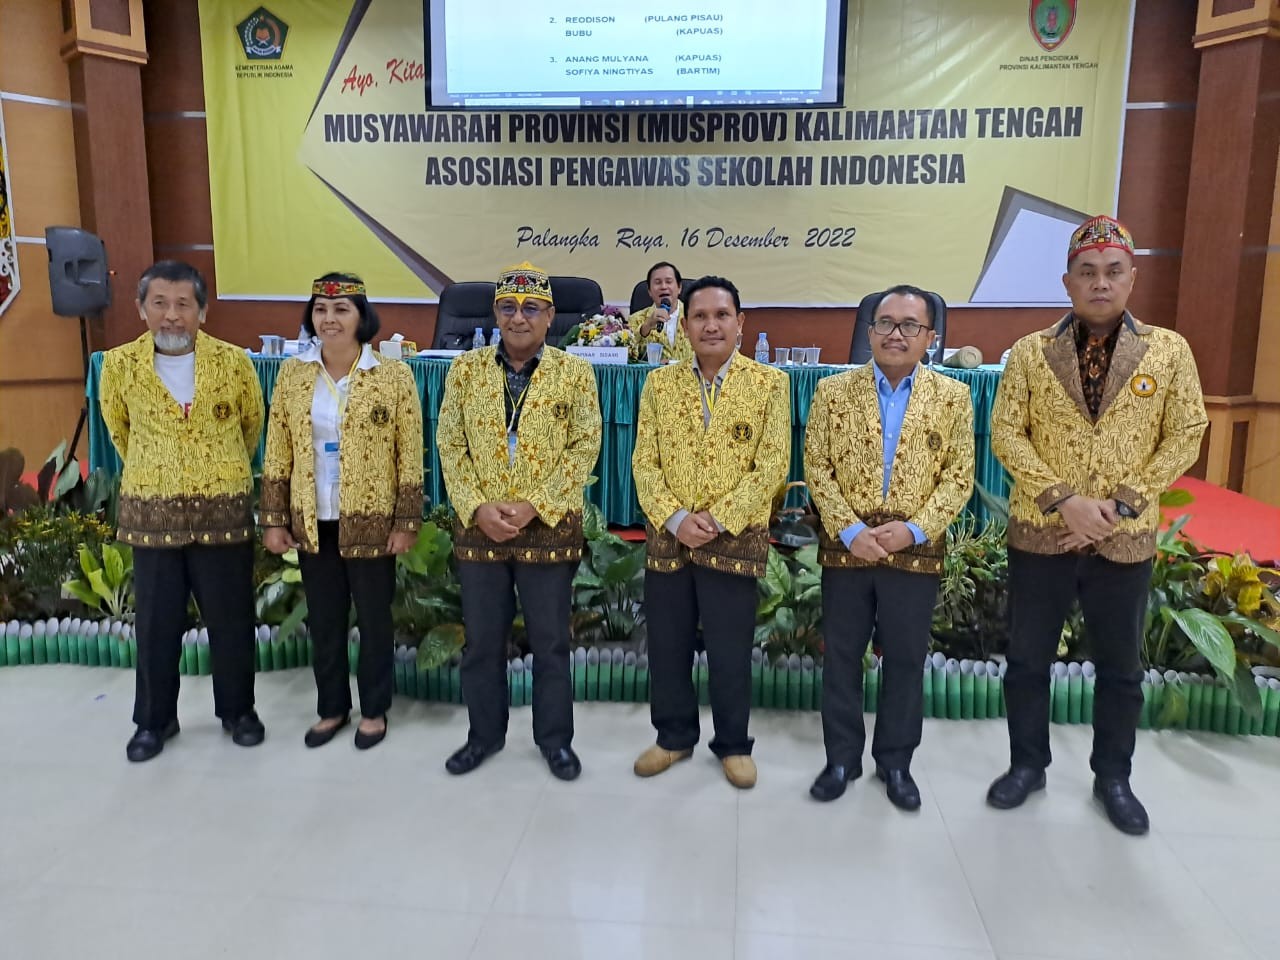 Anang dan Sofi, terpilih sebagai Ketua dan Sekretaris APSI Kalimantan Tengah periode 2022-2027